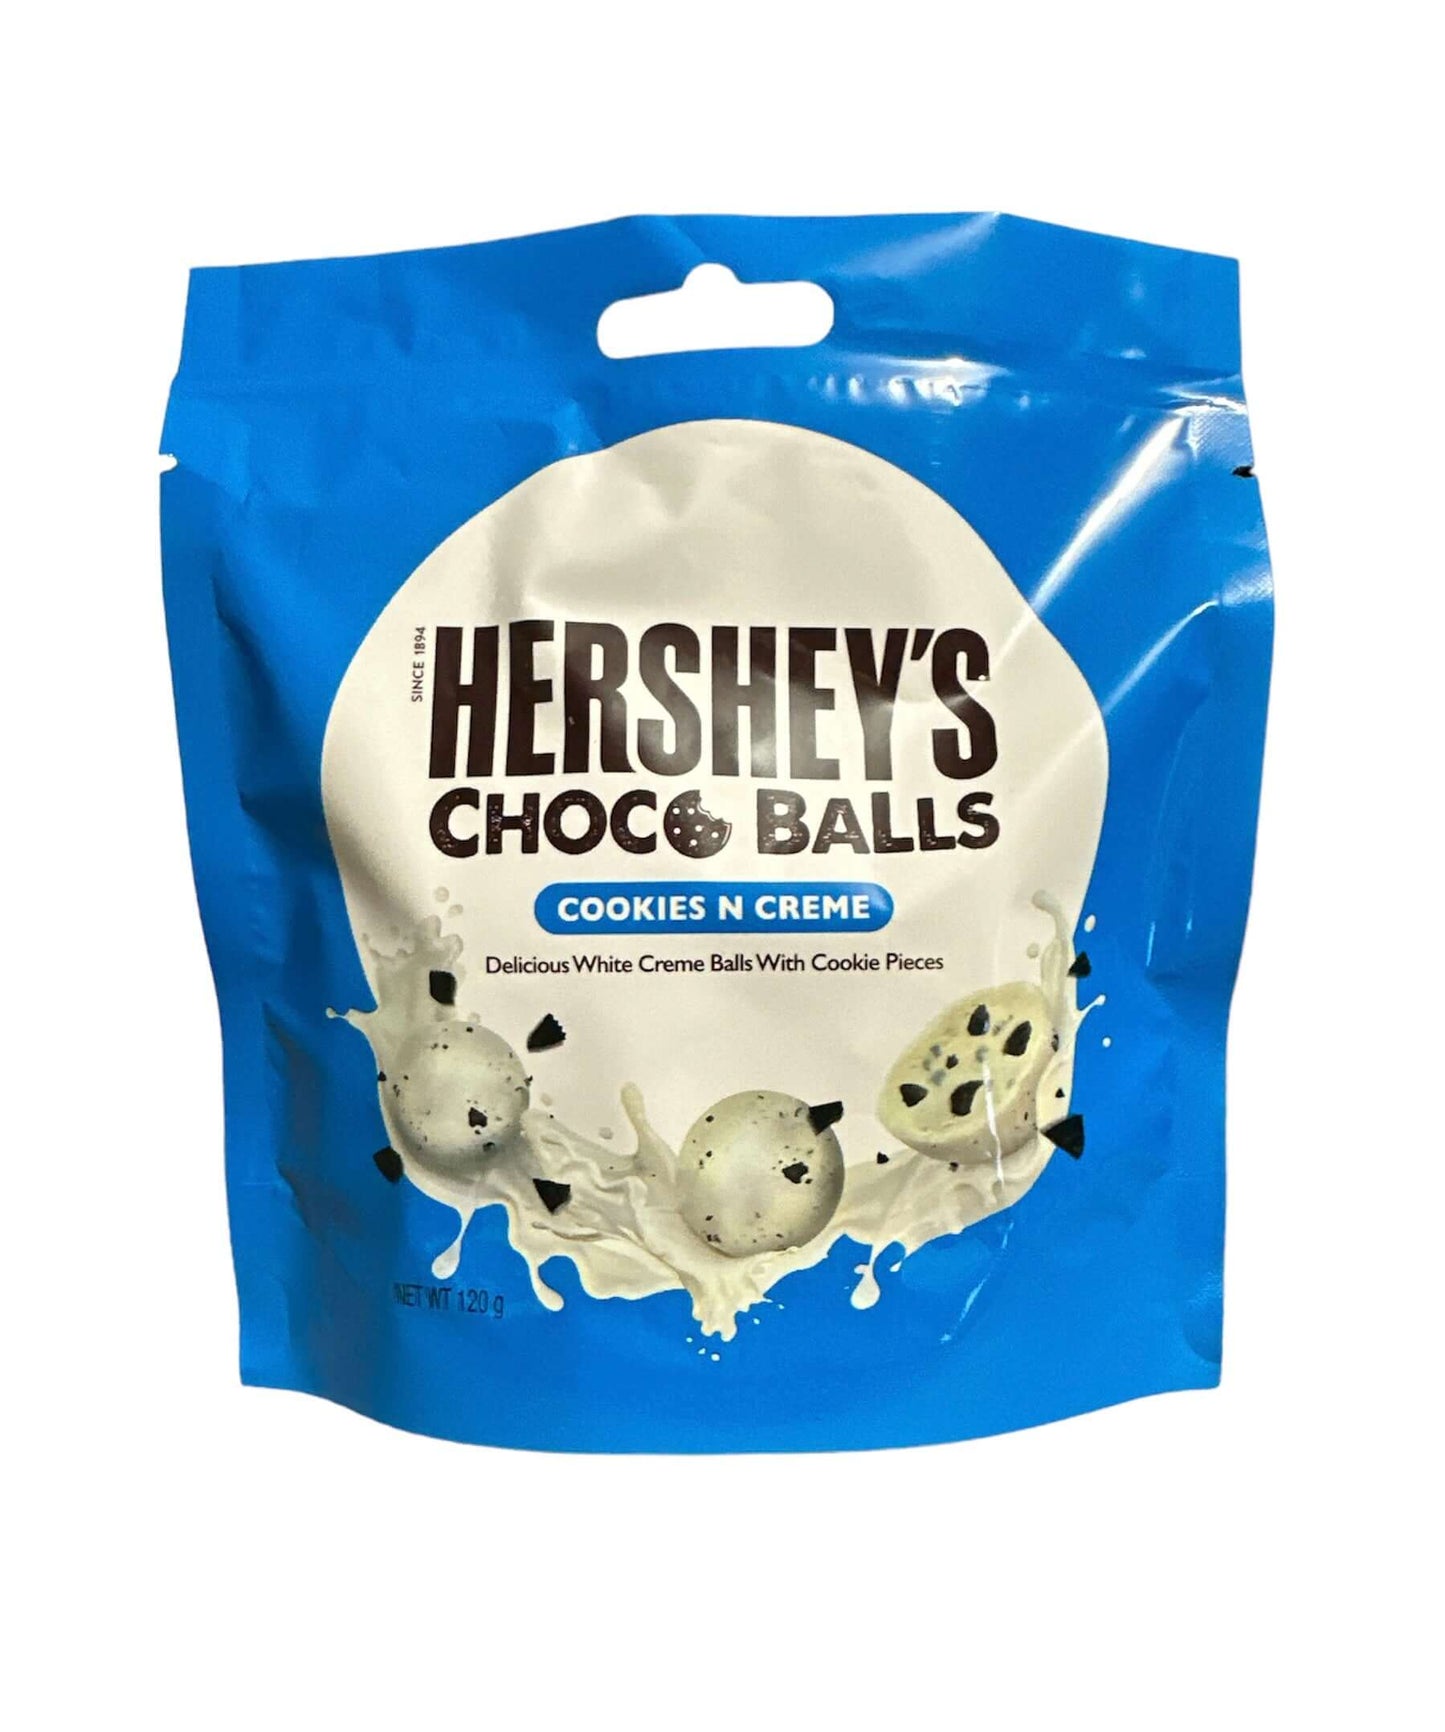 Hershey’s Choc Balls